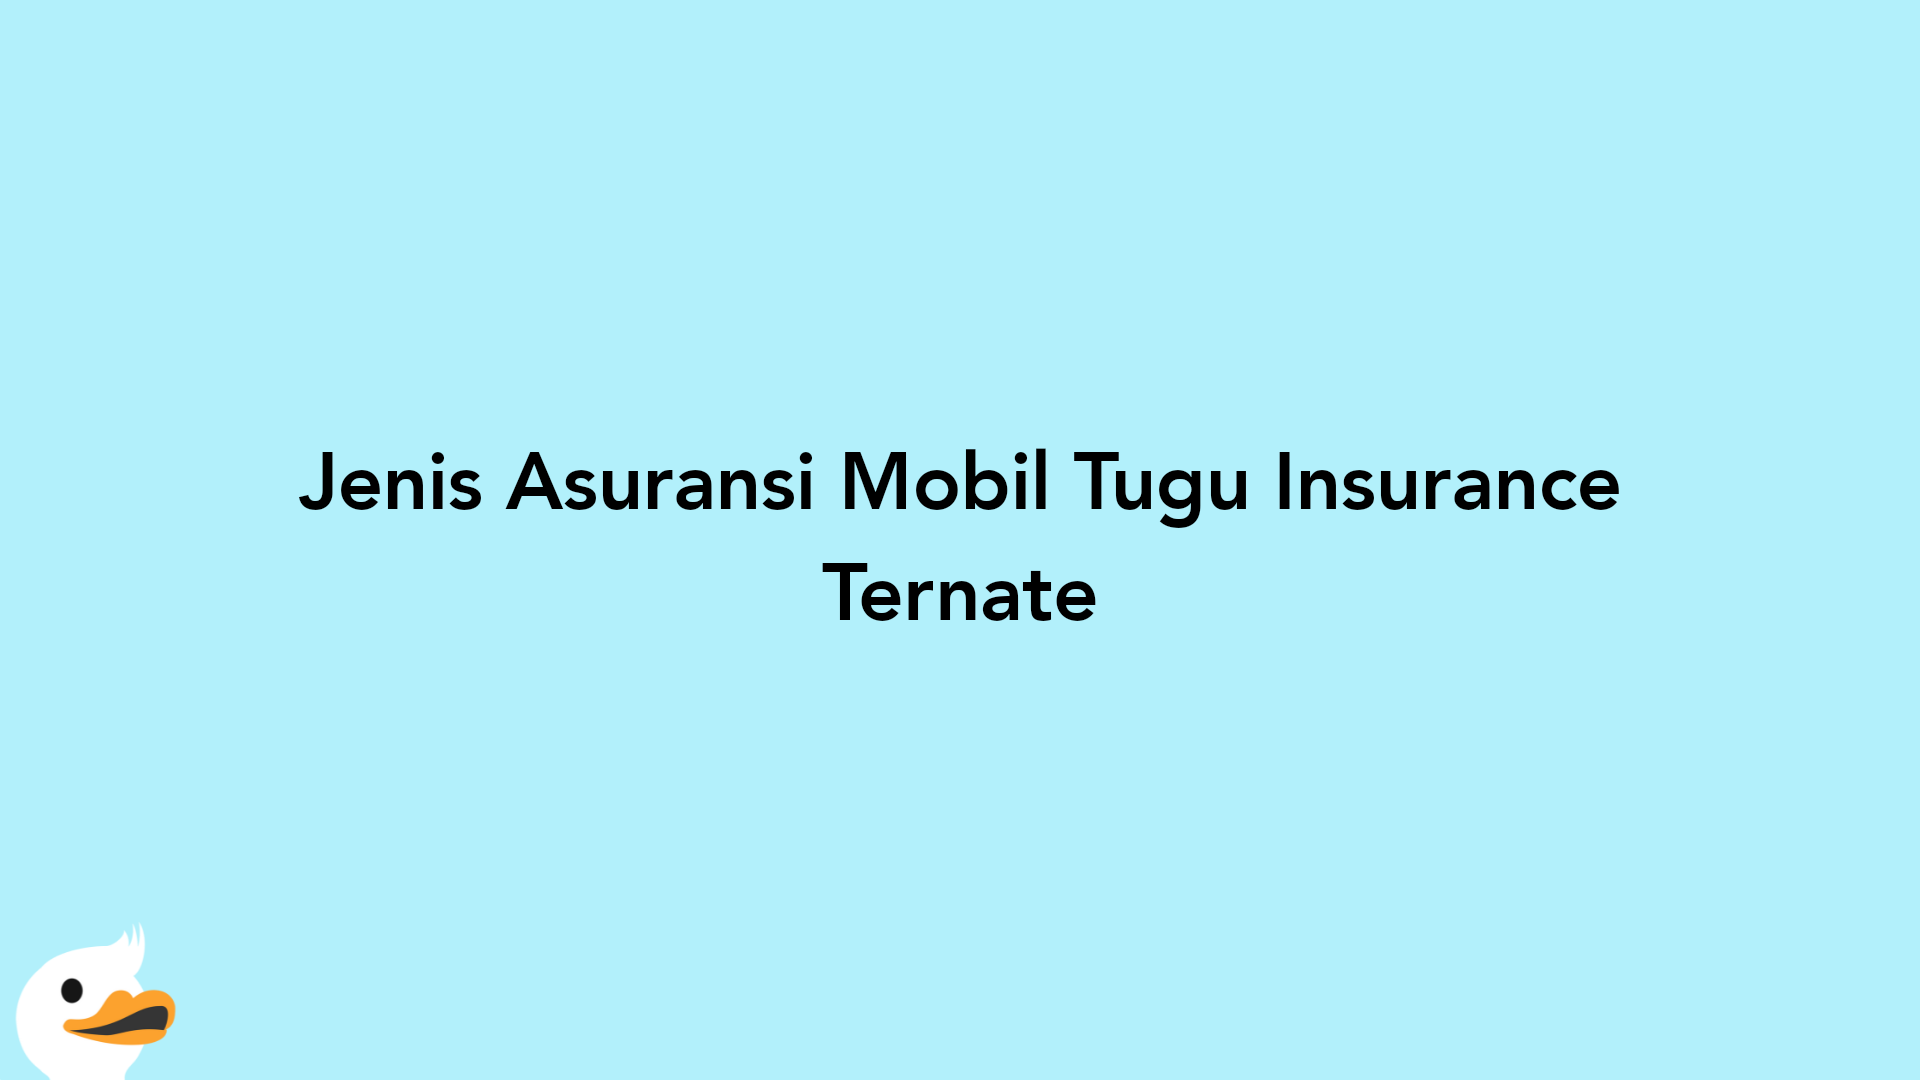 Jenis Asuransi Mobil Tugu Insurance Ternate